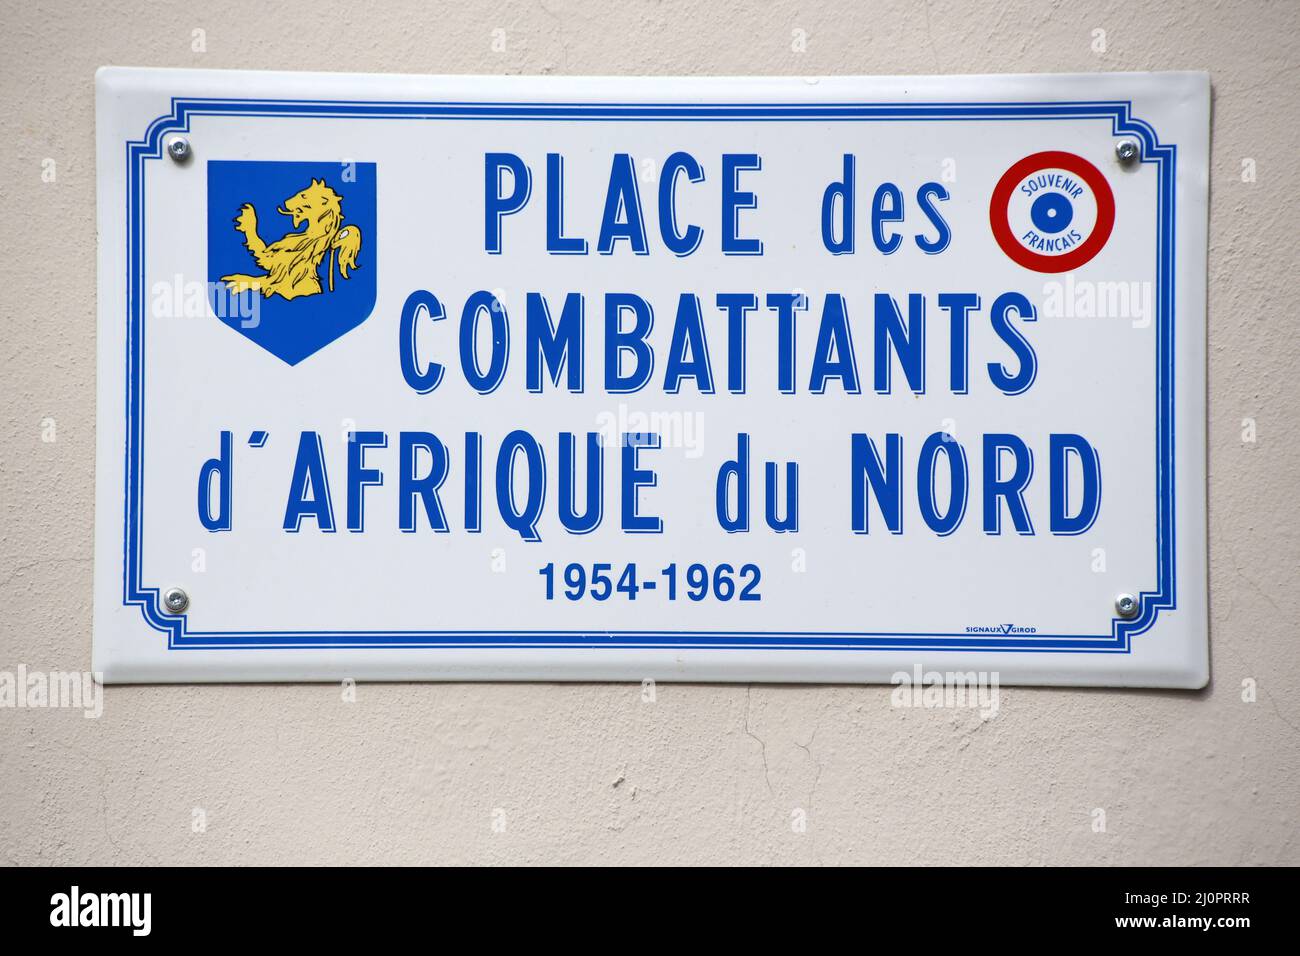 Place des Combattants d'Afrique du Nord. 1954-1962. Plaque en métal. Saint-Gervais-les-Bains. Haute-Savoie. Auvergne-Rhône-Alpes. France. Stock Photo